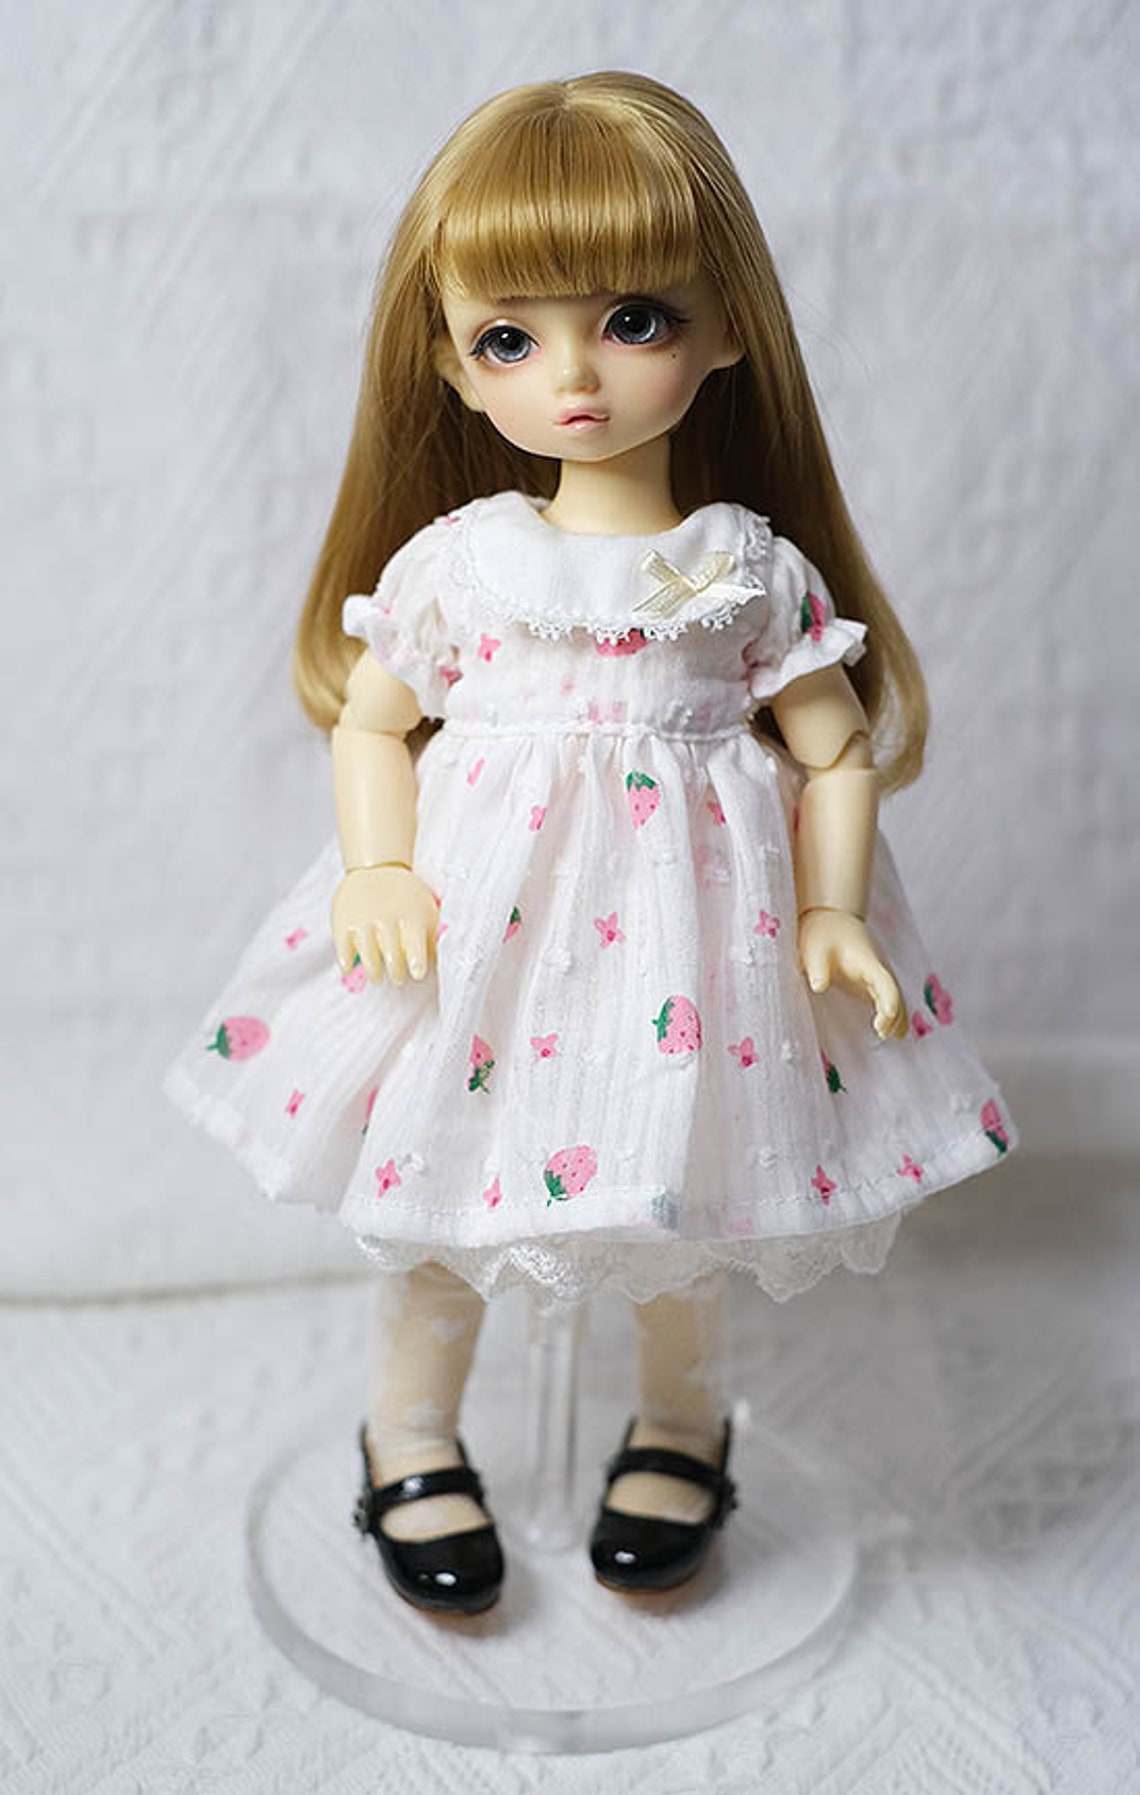 BJD doll yosd 1/6size dress | Etsy